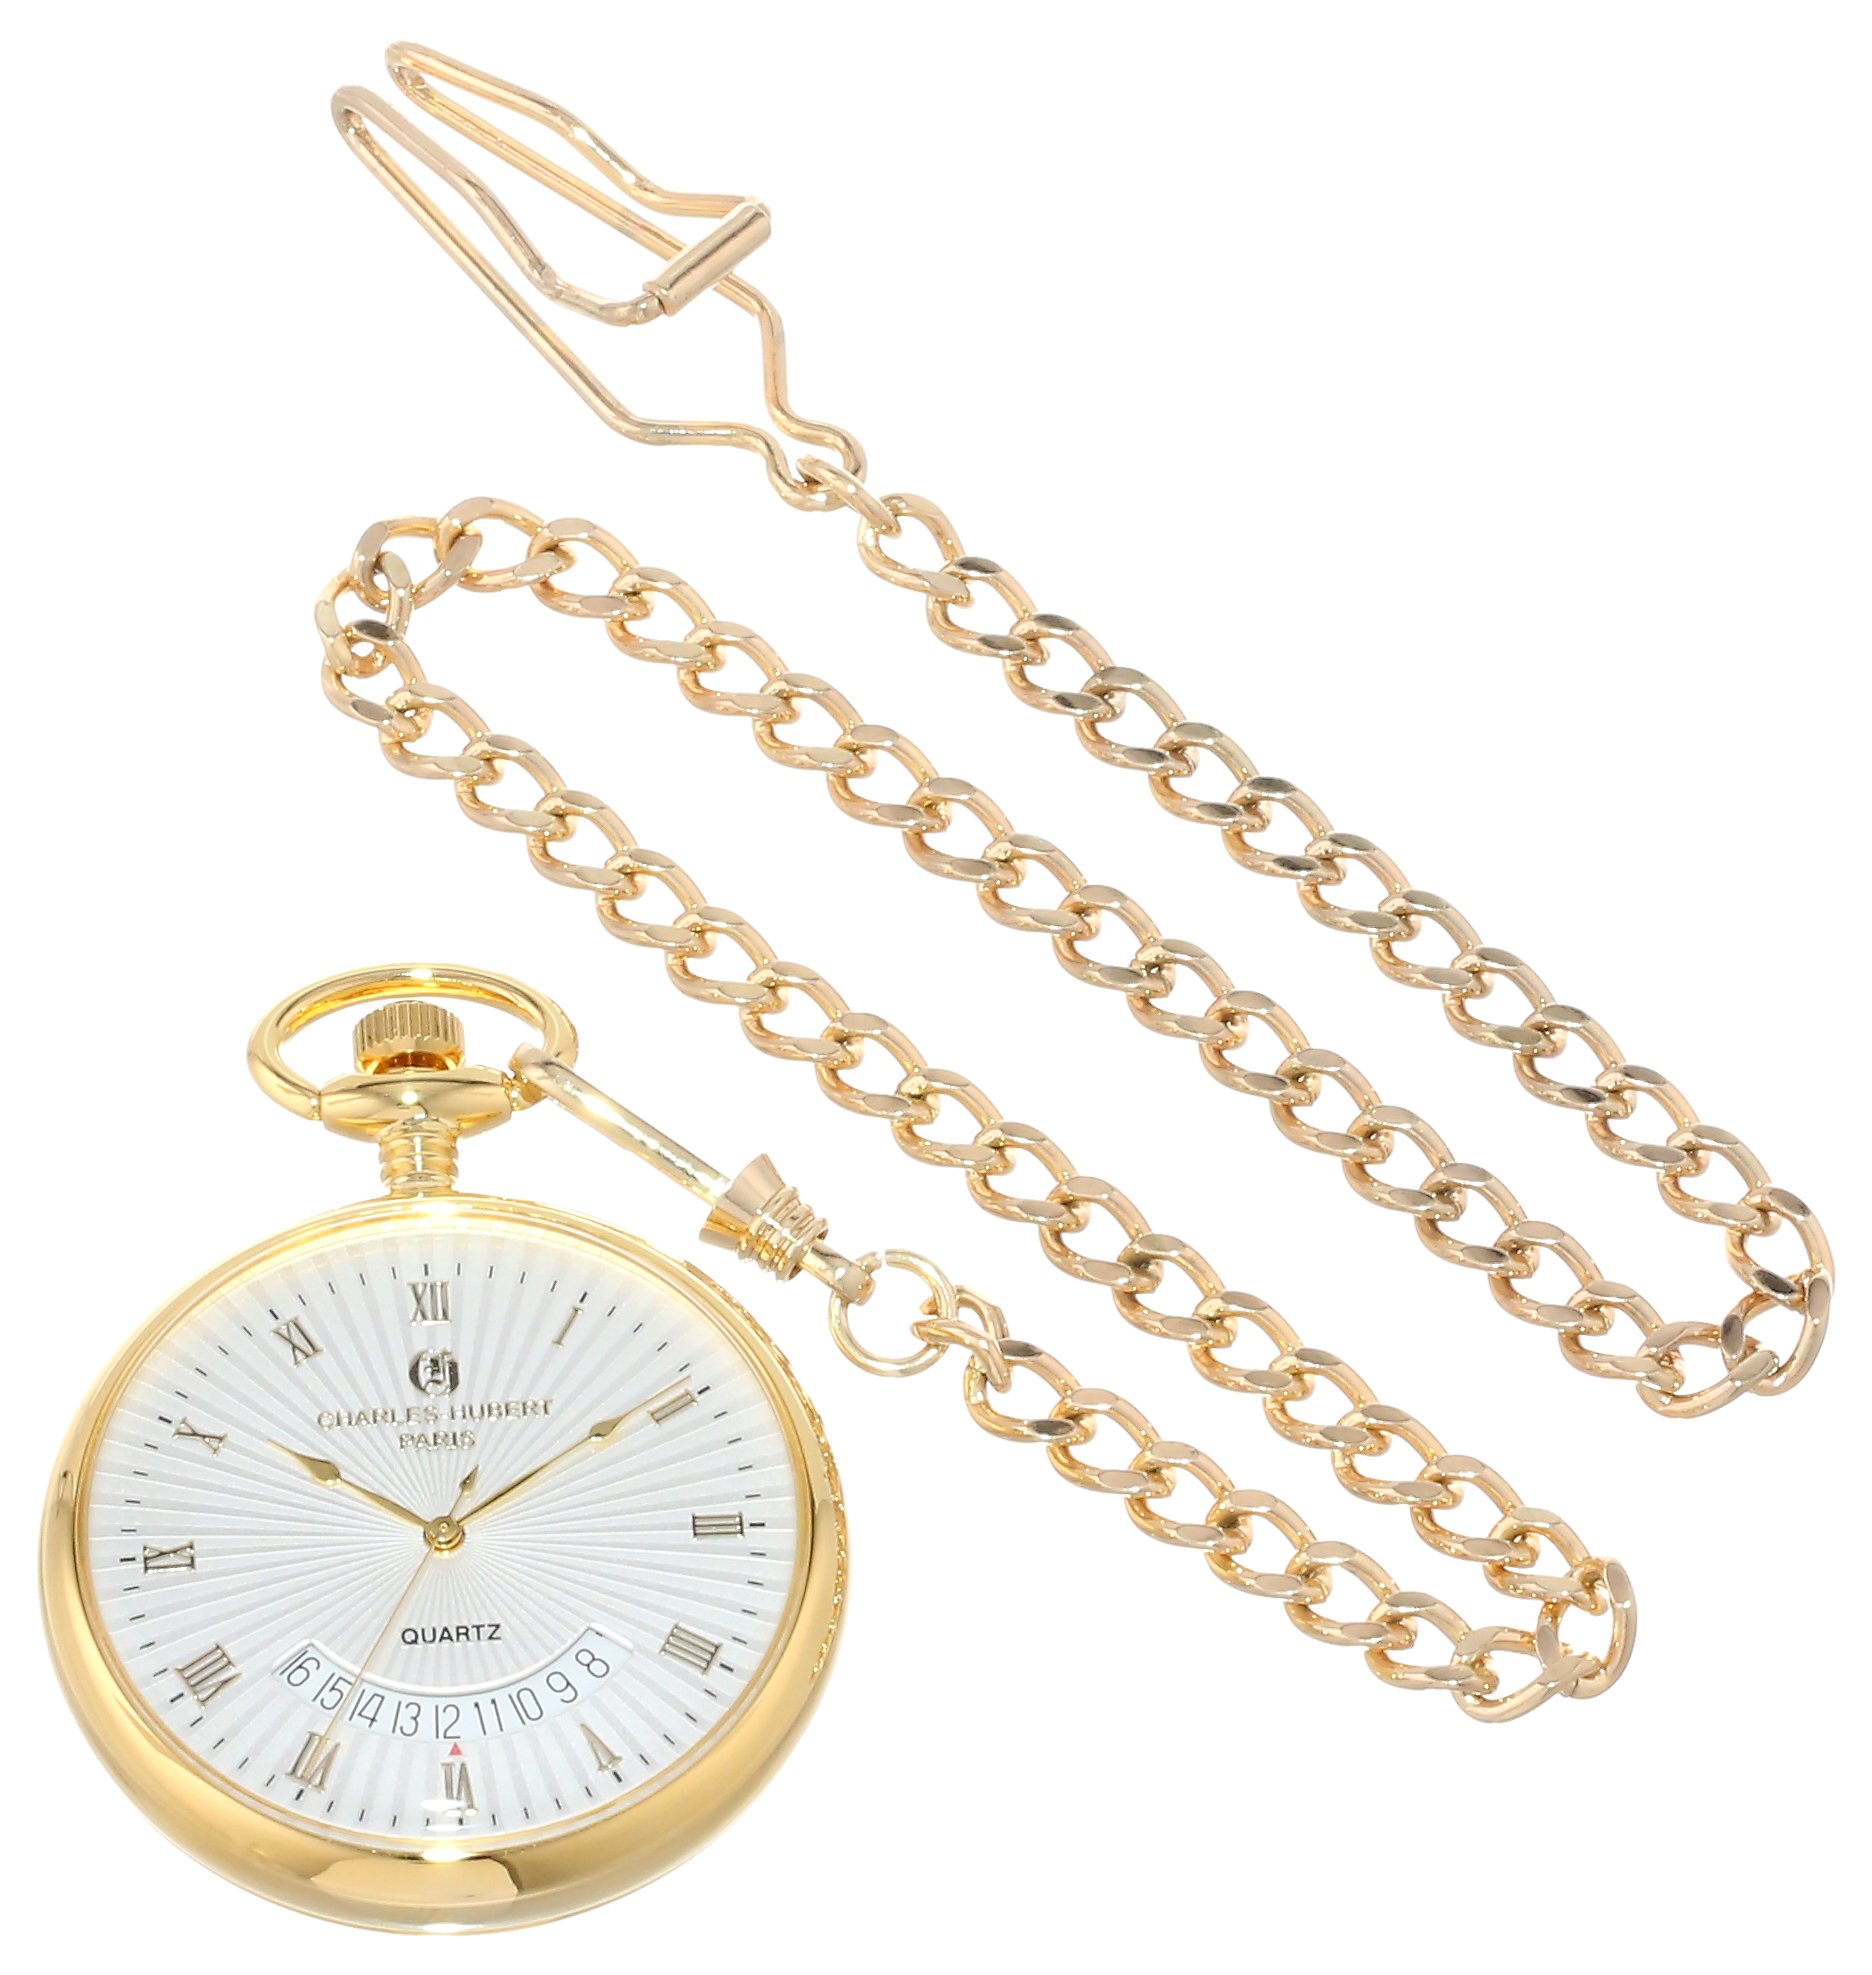 Charles-Hubert, Paris Gold-Plated Open Face Quartz Pocket Watch